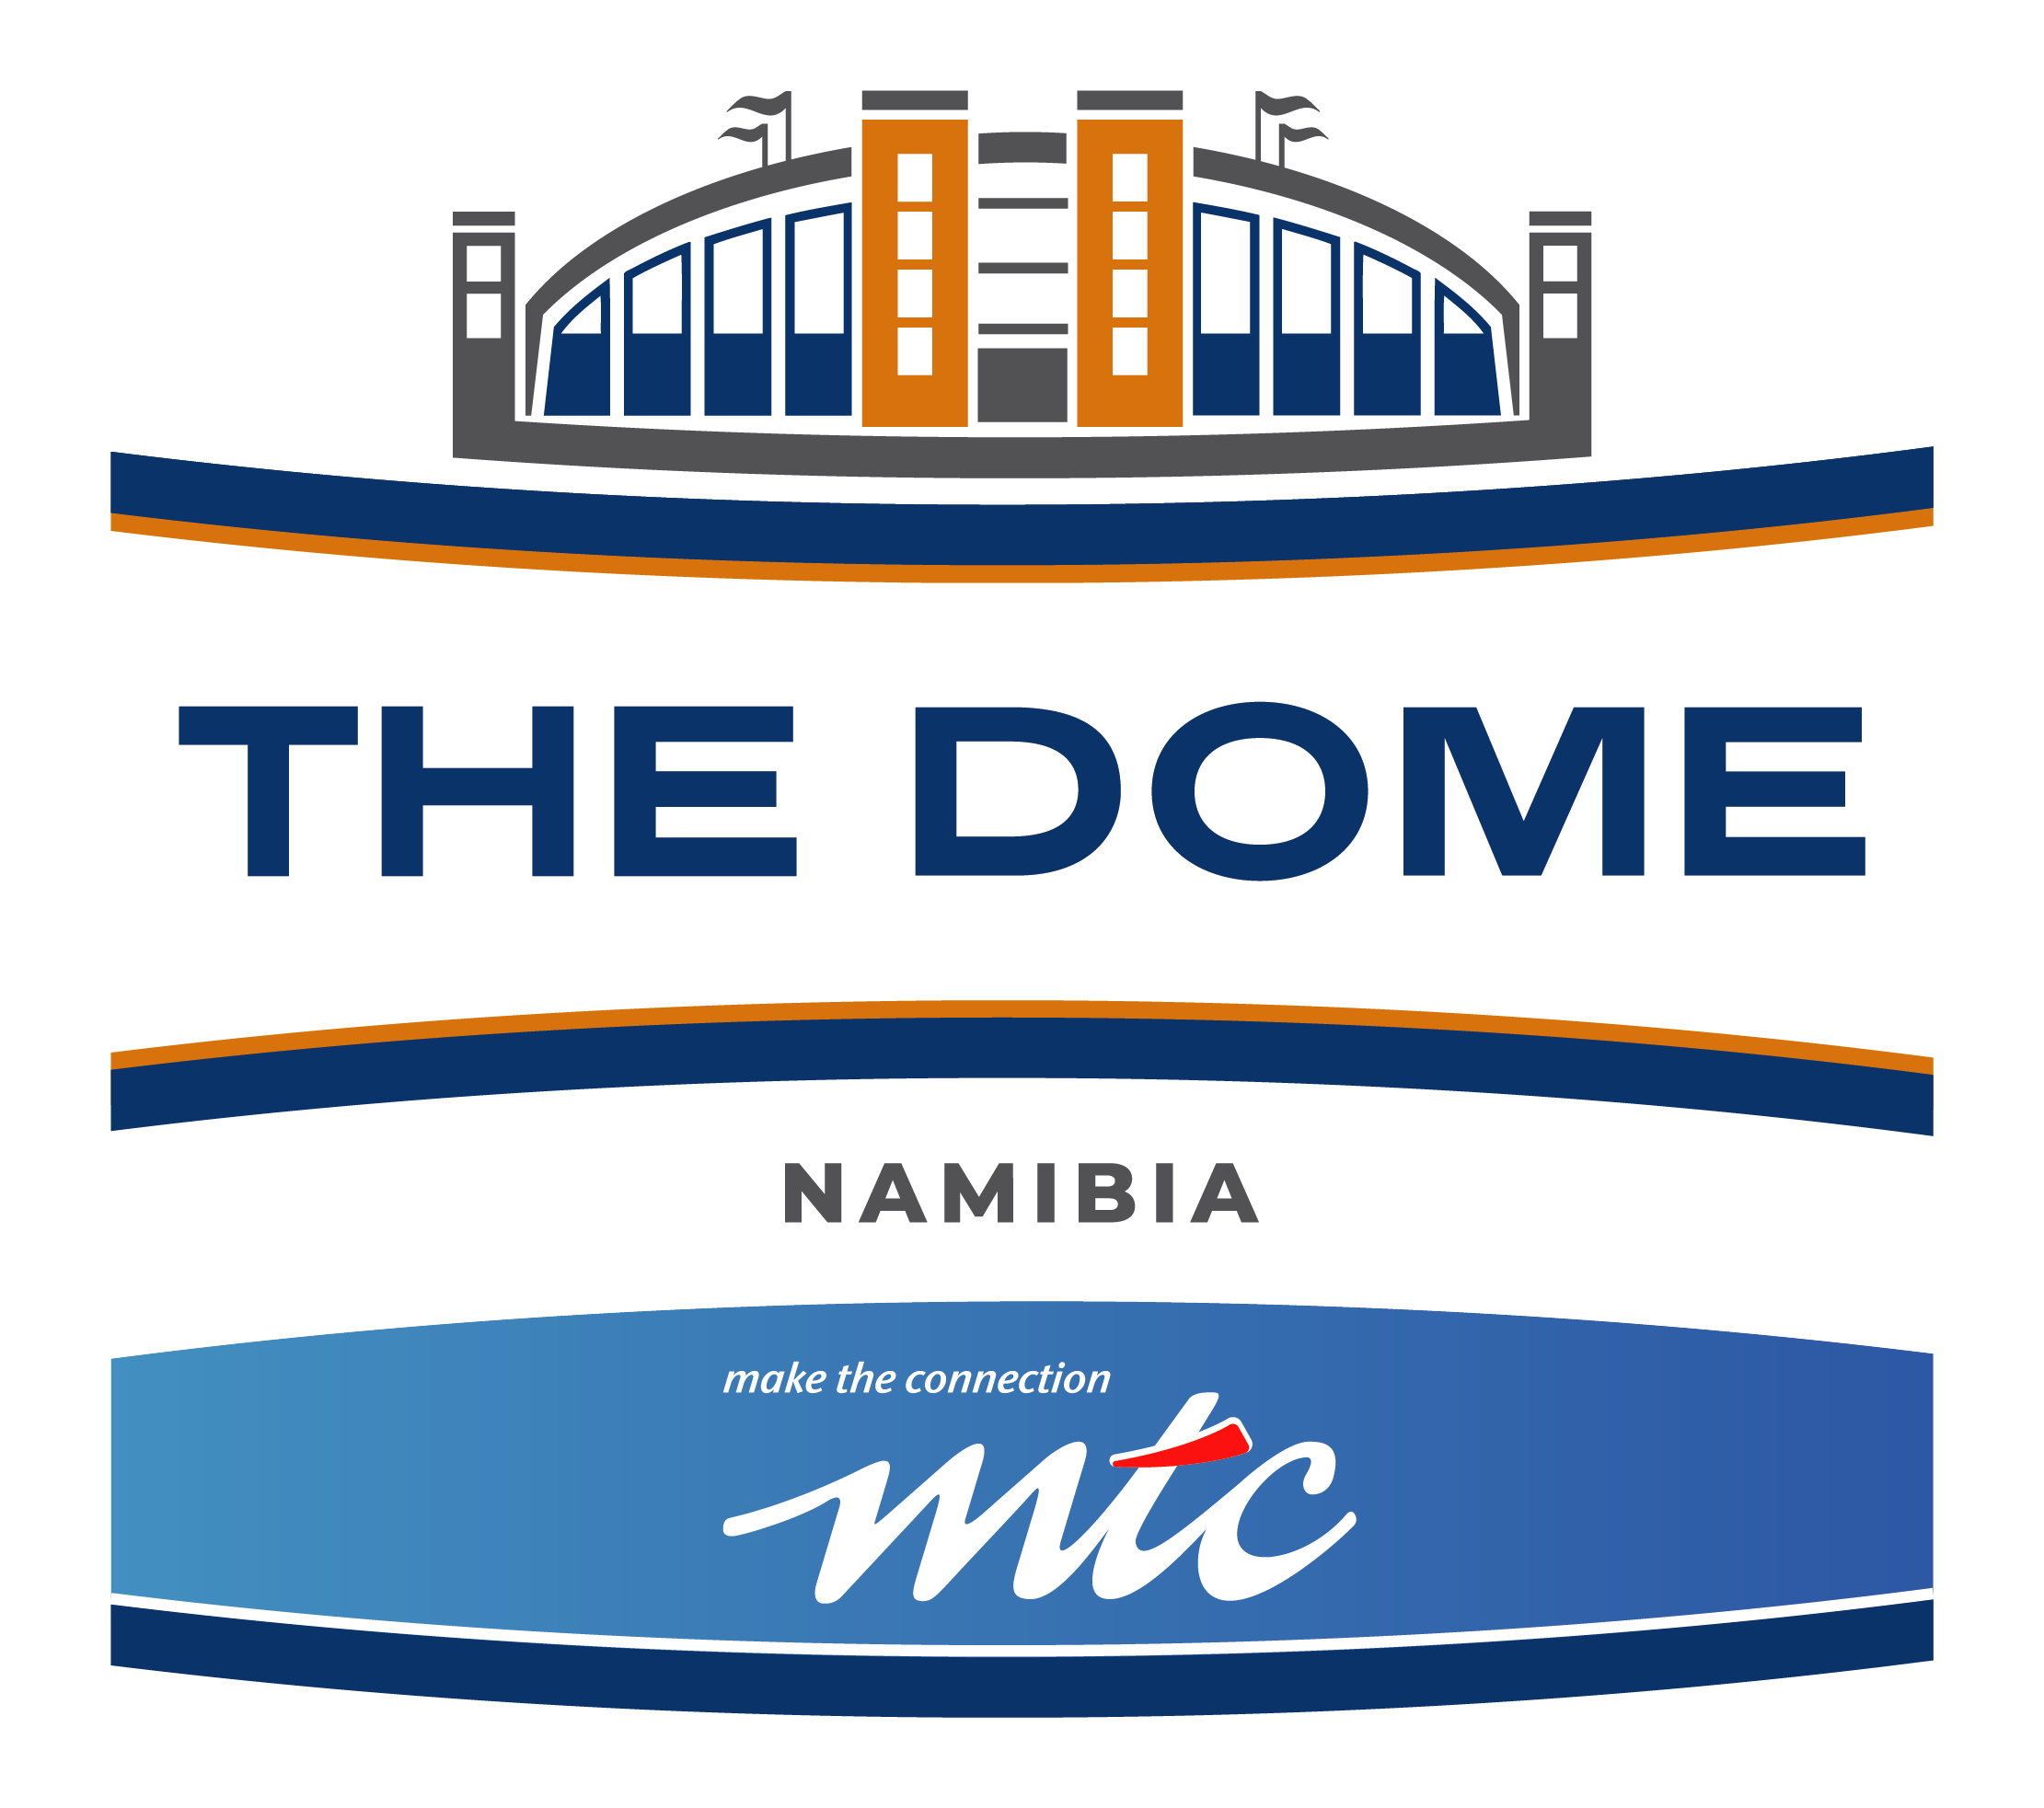 MTC Dome Logo